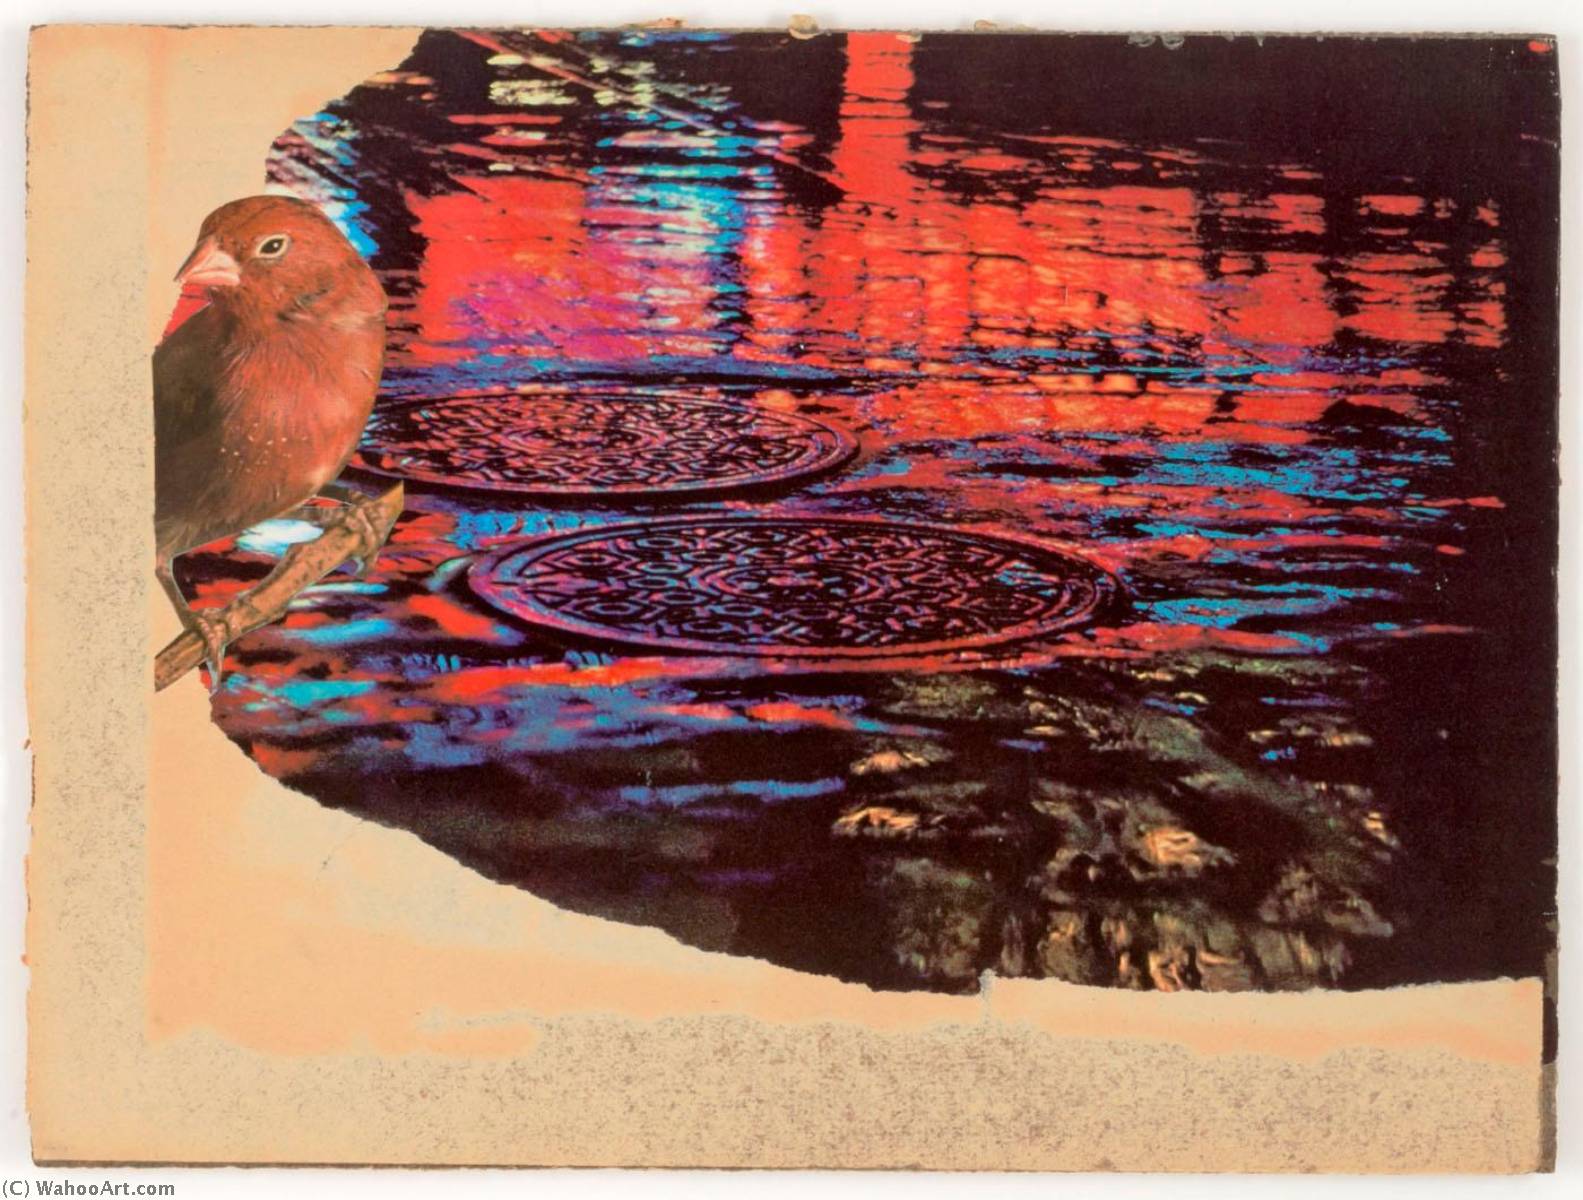 Wikioo.org - Bách khoa toàn thư về mỹ thuật - Vẽ tranh, Tác phẩm nghệ thuật Joseph Cornell - Untitled (rainy street with sewer covers)